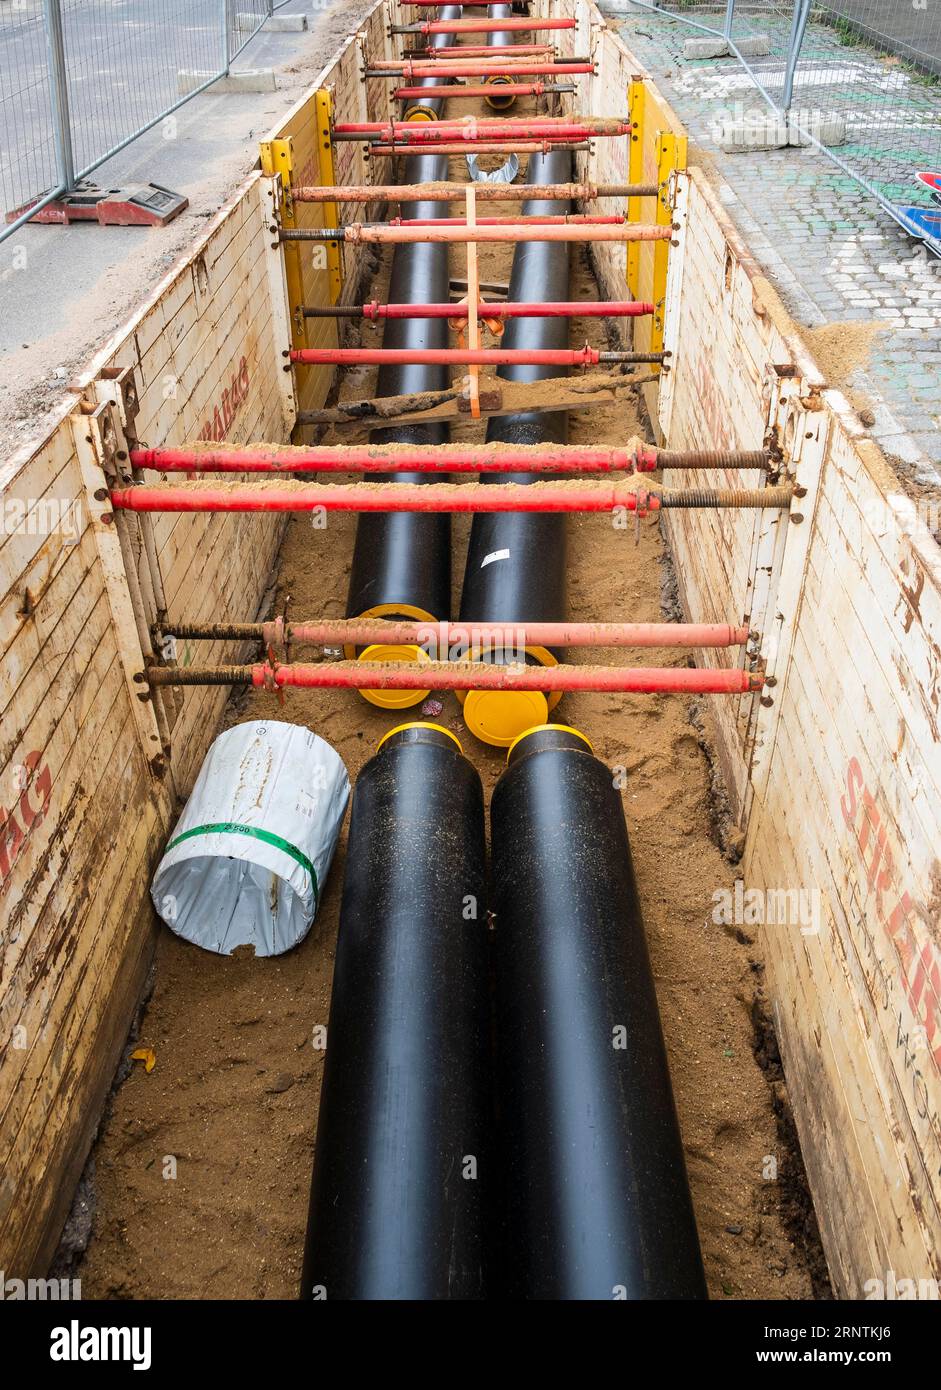 Lavori di costruzione di un nuovo gasdotto per il teleriscaldamento per l'utilizzo del calore di scarto proveniente da un impianto industriale nel distretto di Benrath, Duesseldorf, Germania Foto Stock